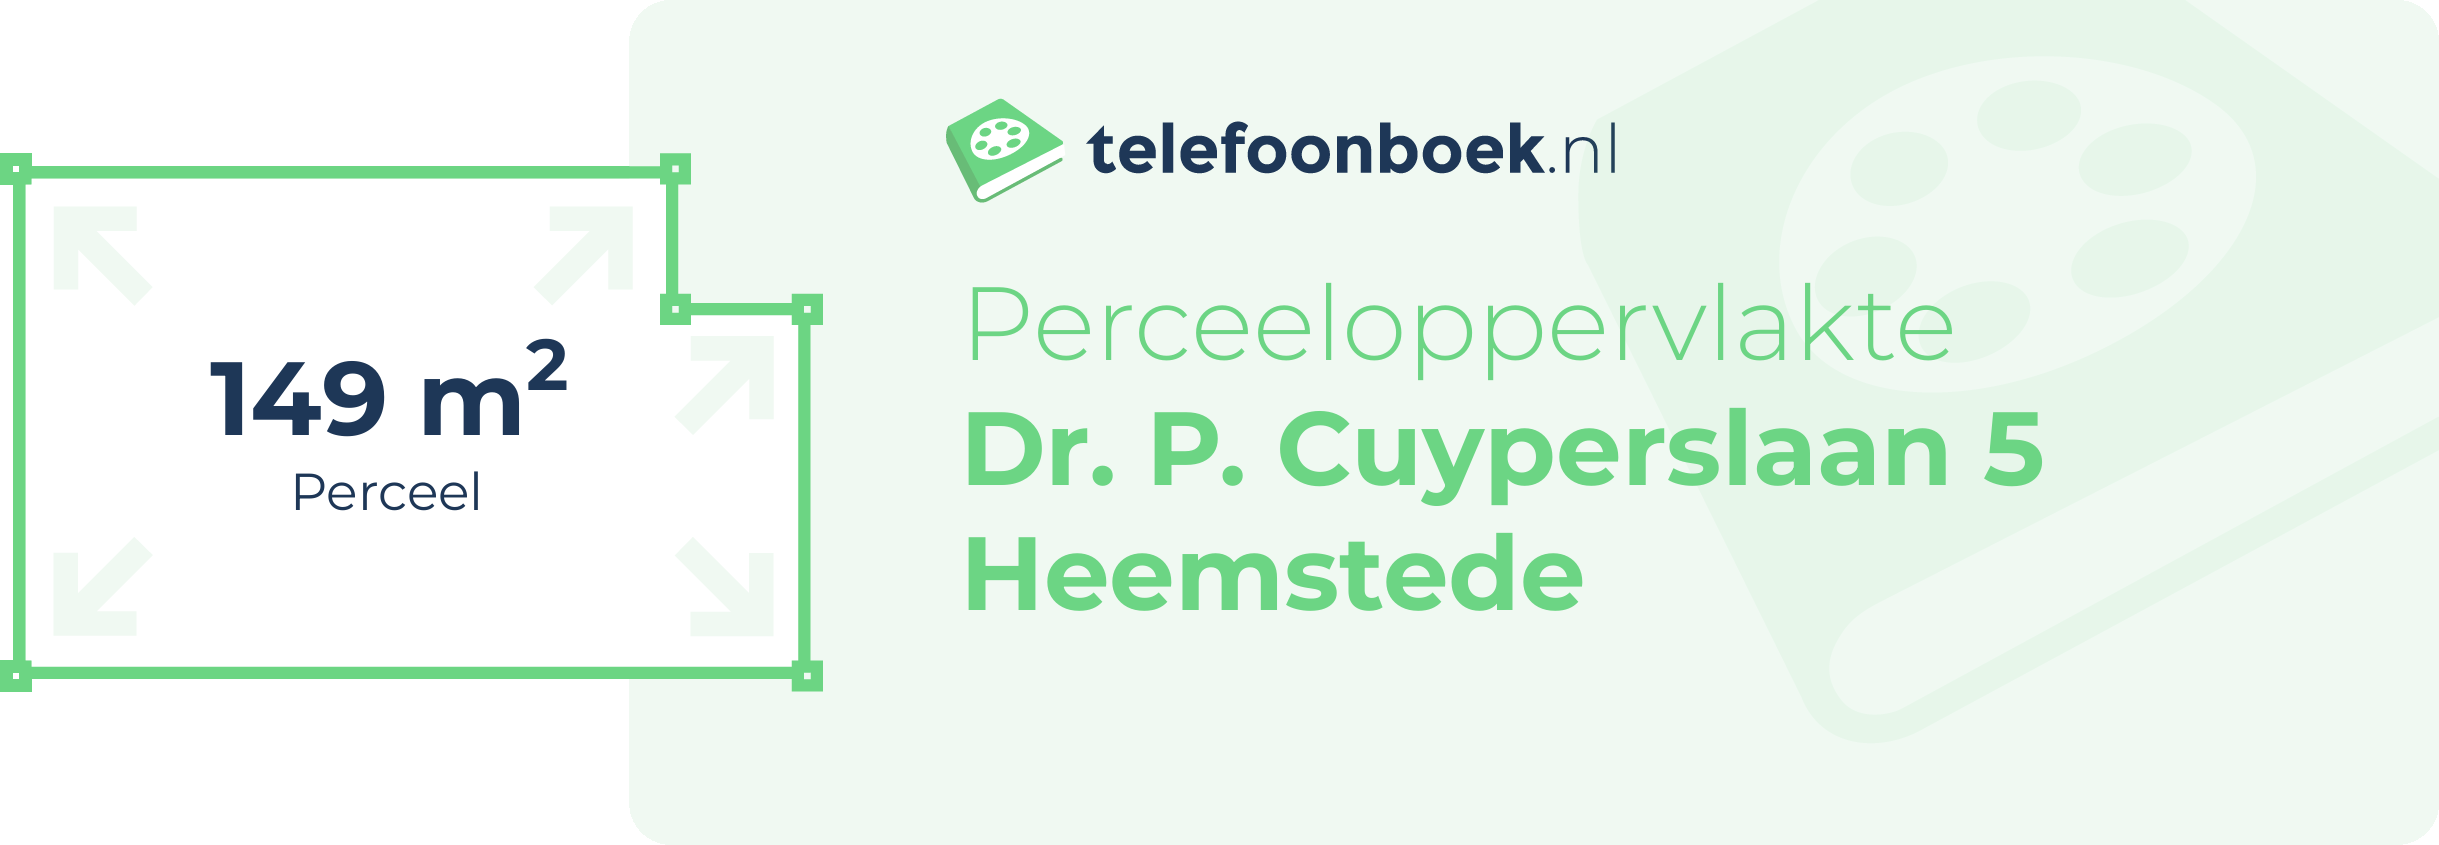 Perceeloppervlakte Dr. P. Cuyperslaan 5 Heemstede